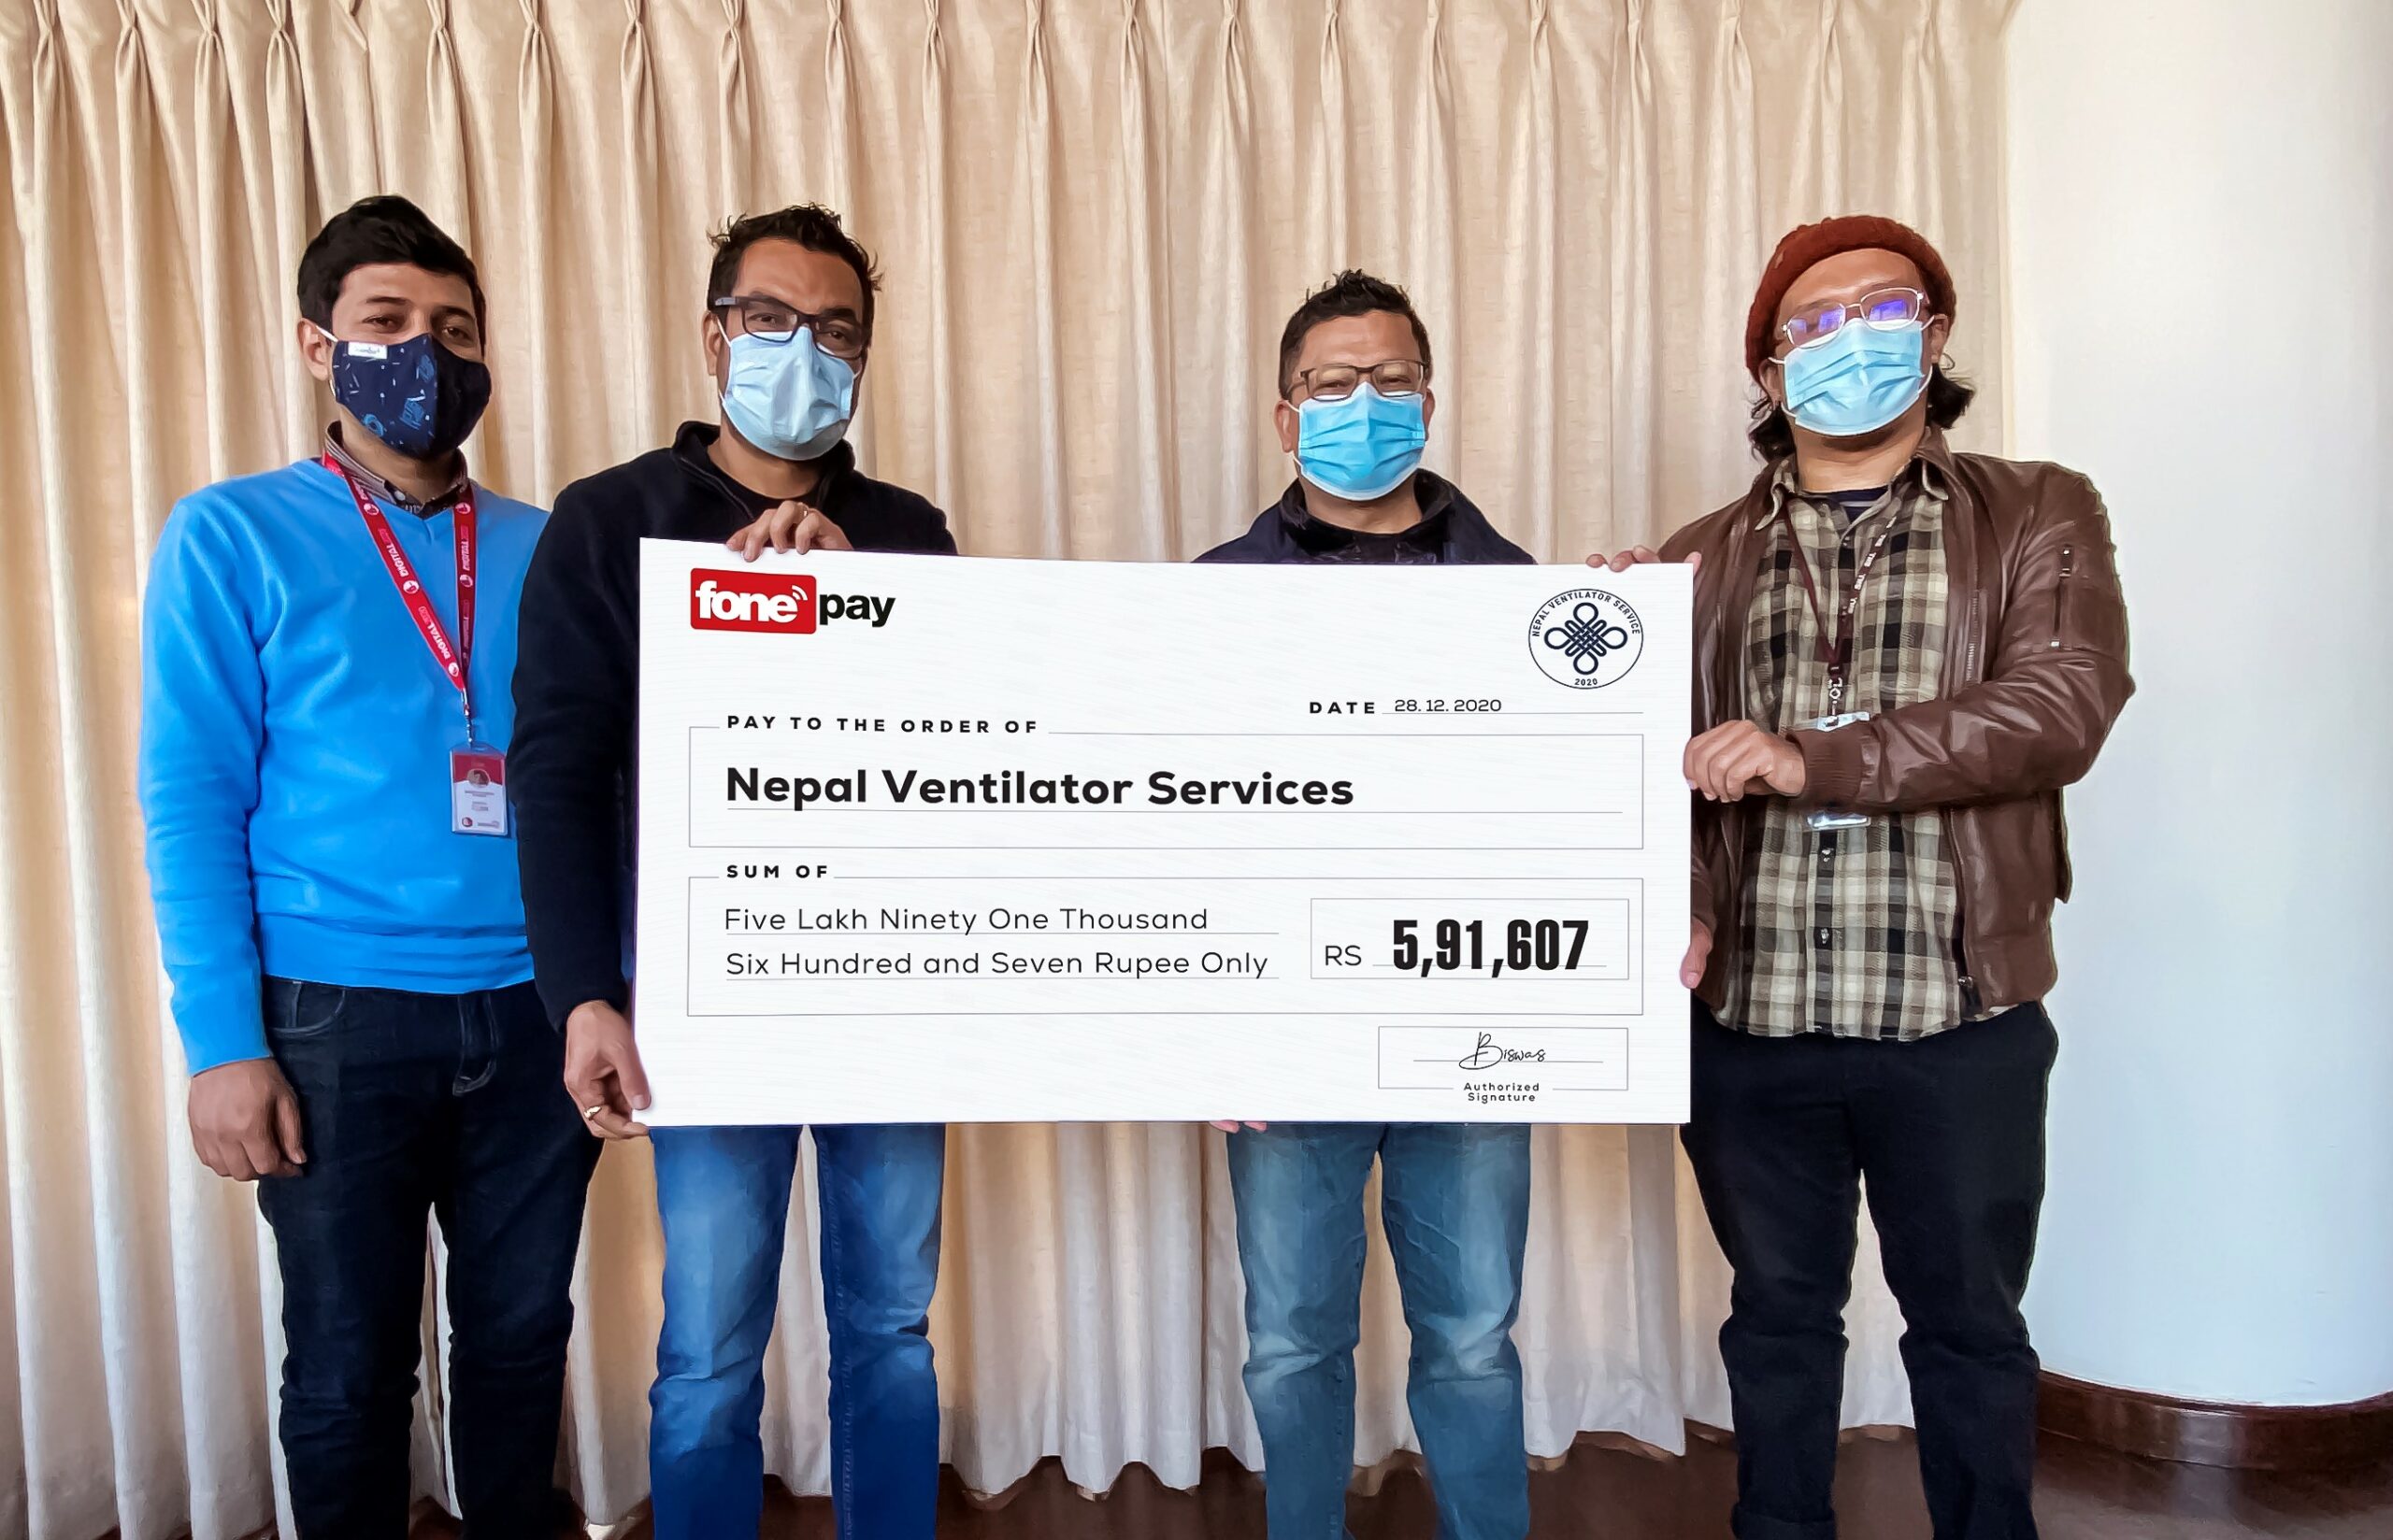 नेपाल भेन्टिलेटर बैंकलाई फो पे मार्फत सहयोग रकम हस्तान्तरण